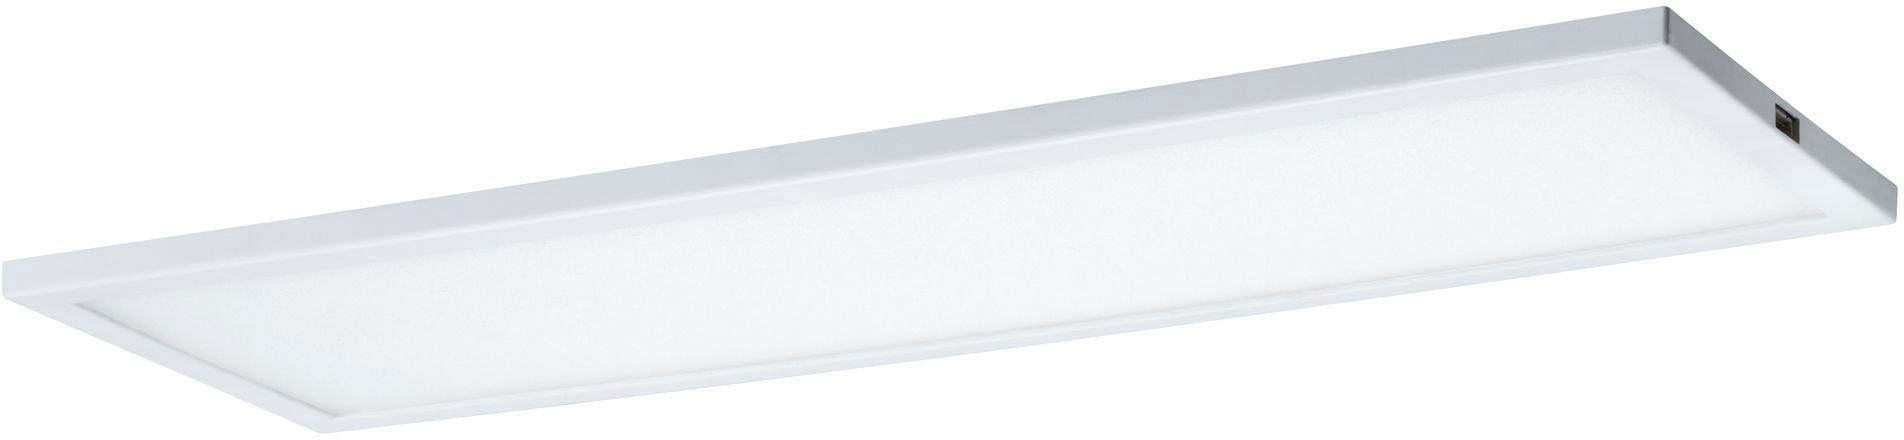 Panel integriert, Ace LED Erweiterung, Weiß Warmweiß, LED LED fest 10x30cm Unterschrankleuchte Erweiterung Weiß Ace 7,5W Panel 10x30cm Paulmann 7,5W